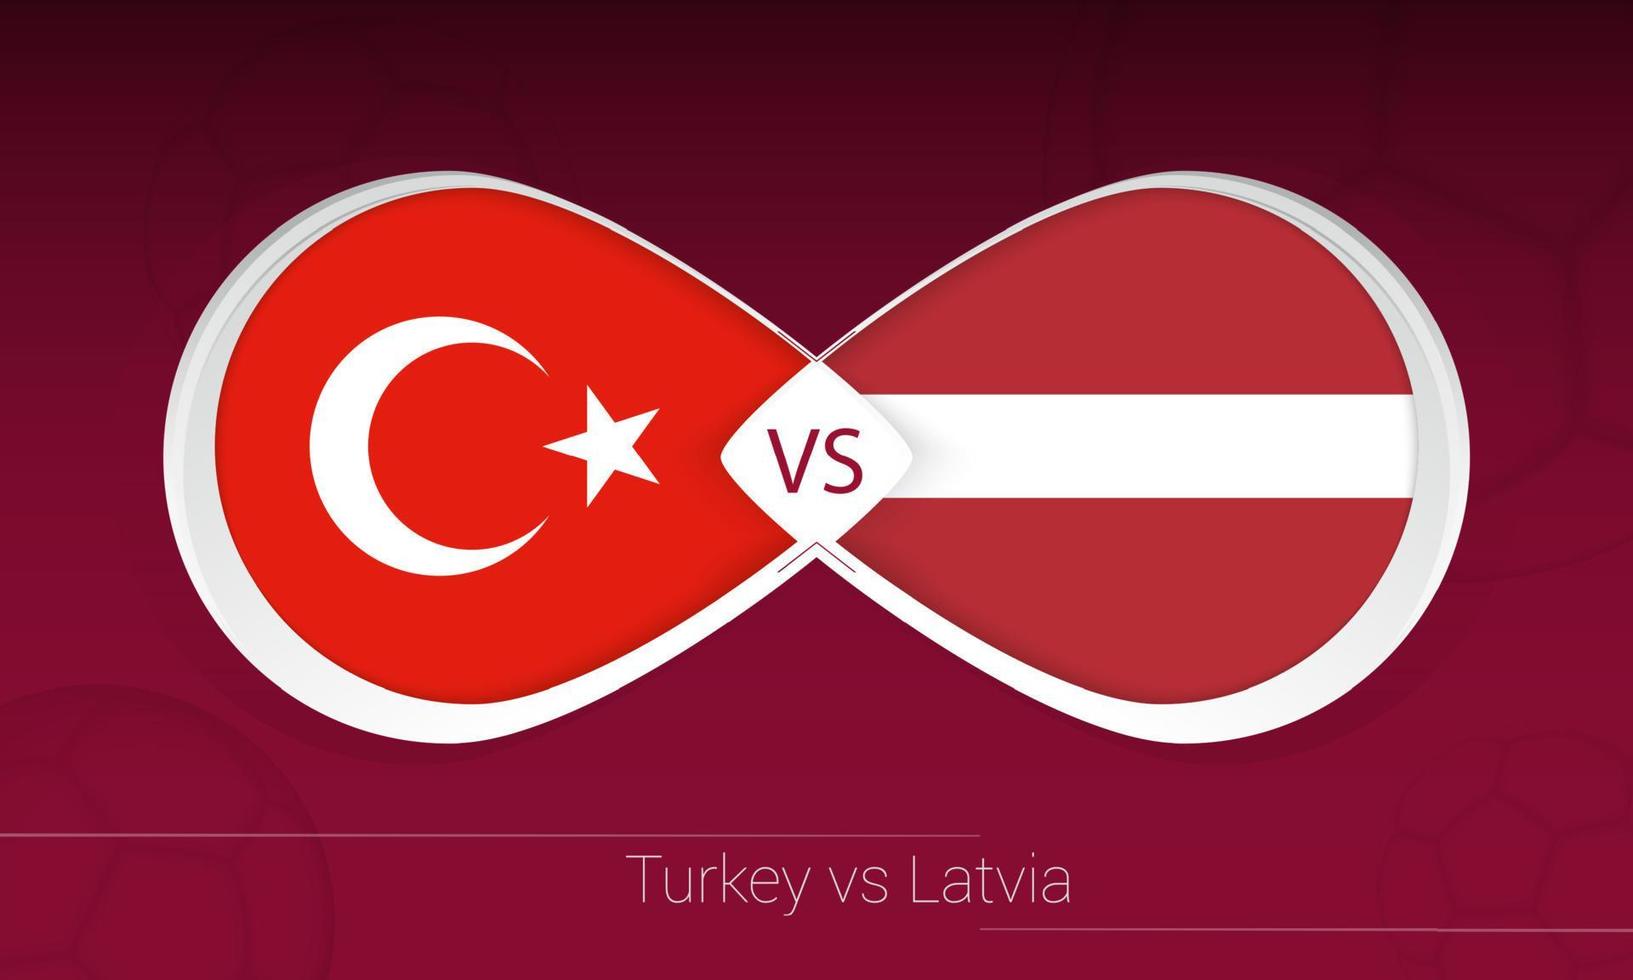 türkei gegen lettland im fußballwettbewerb, gruppe g. gegen Symbol auf Fußballhintergrund. vektor